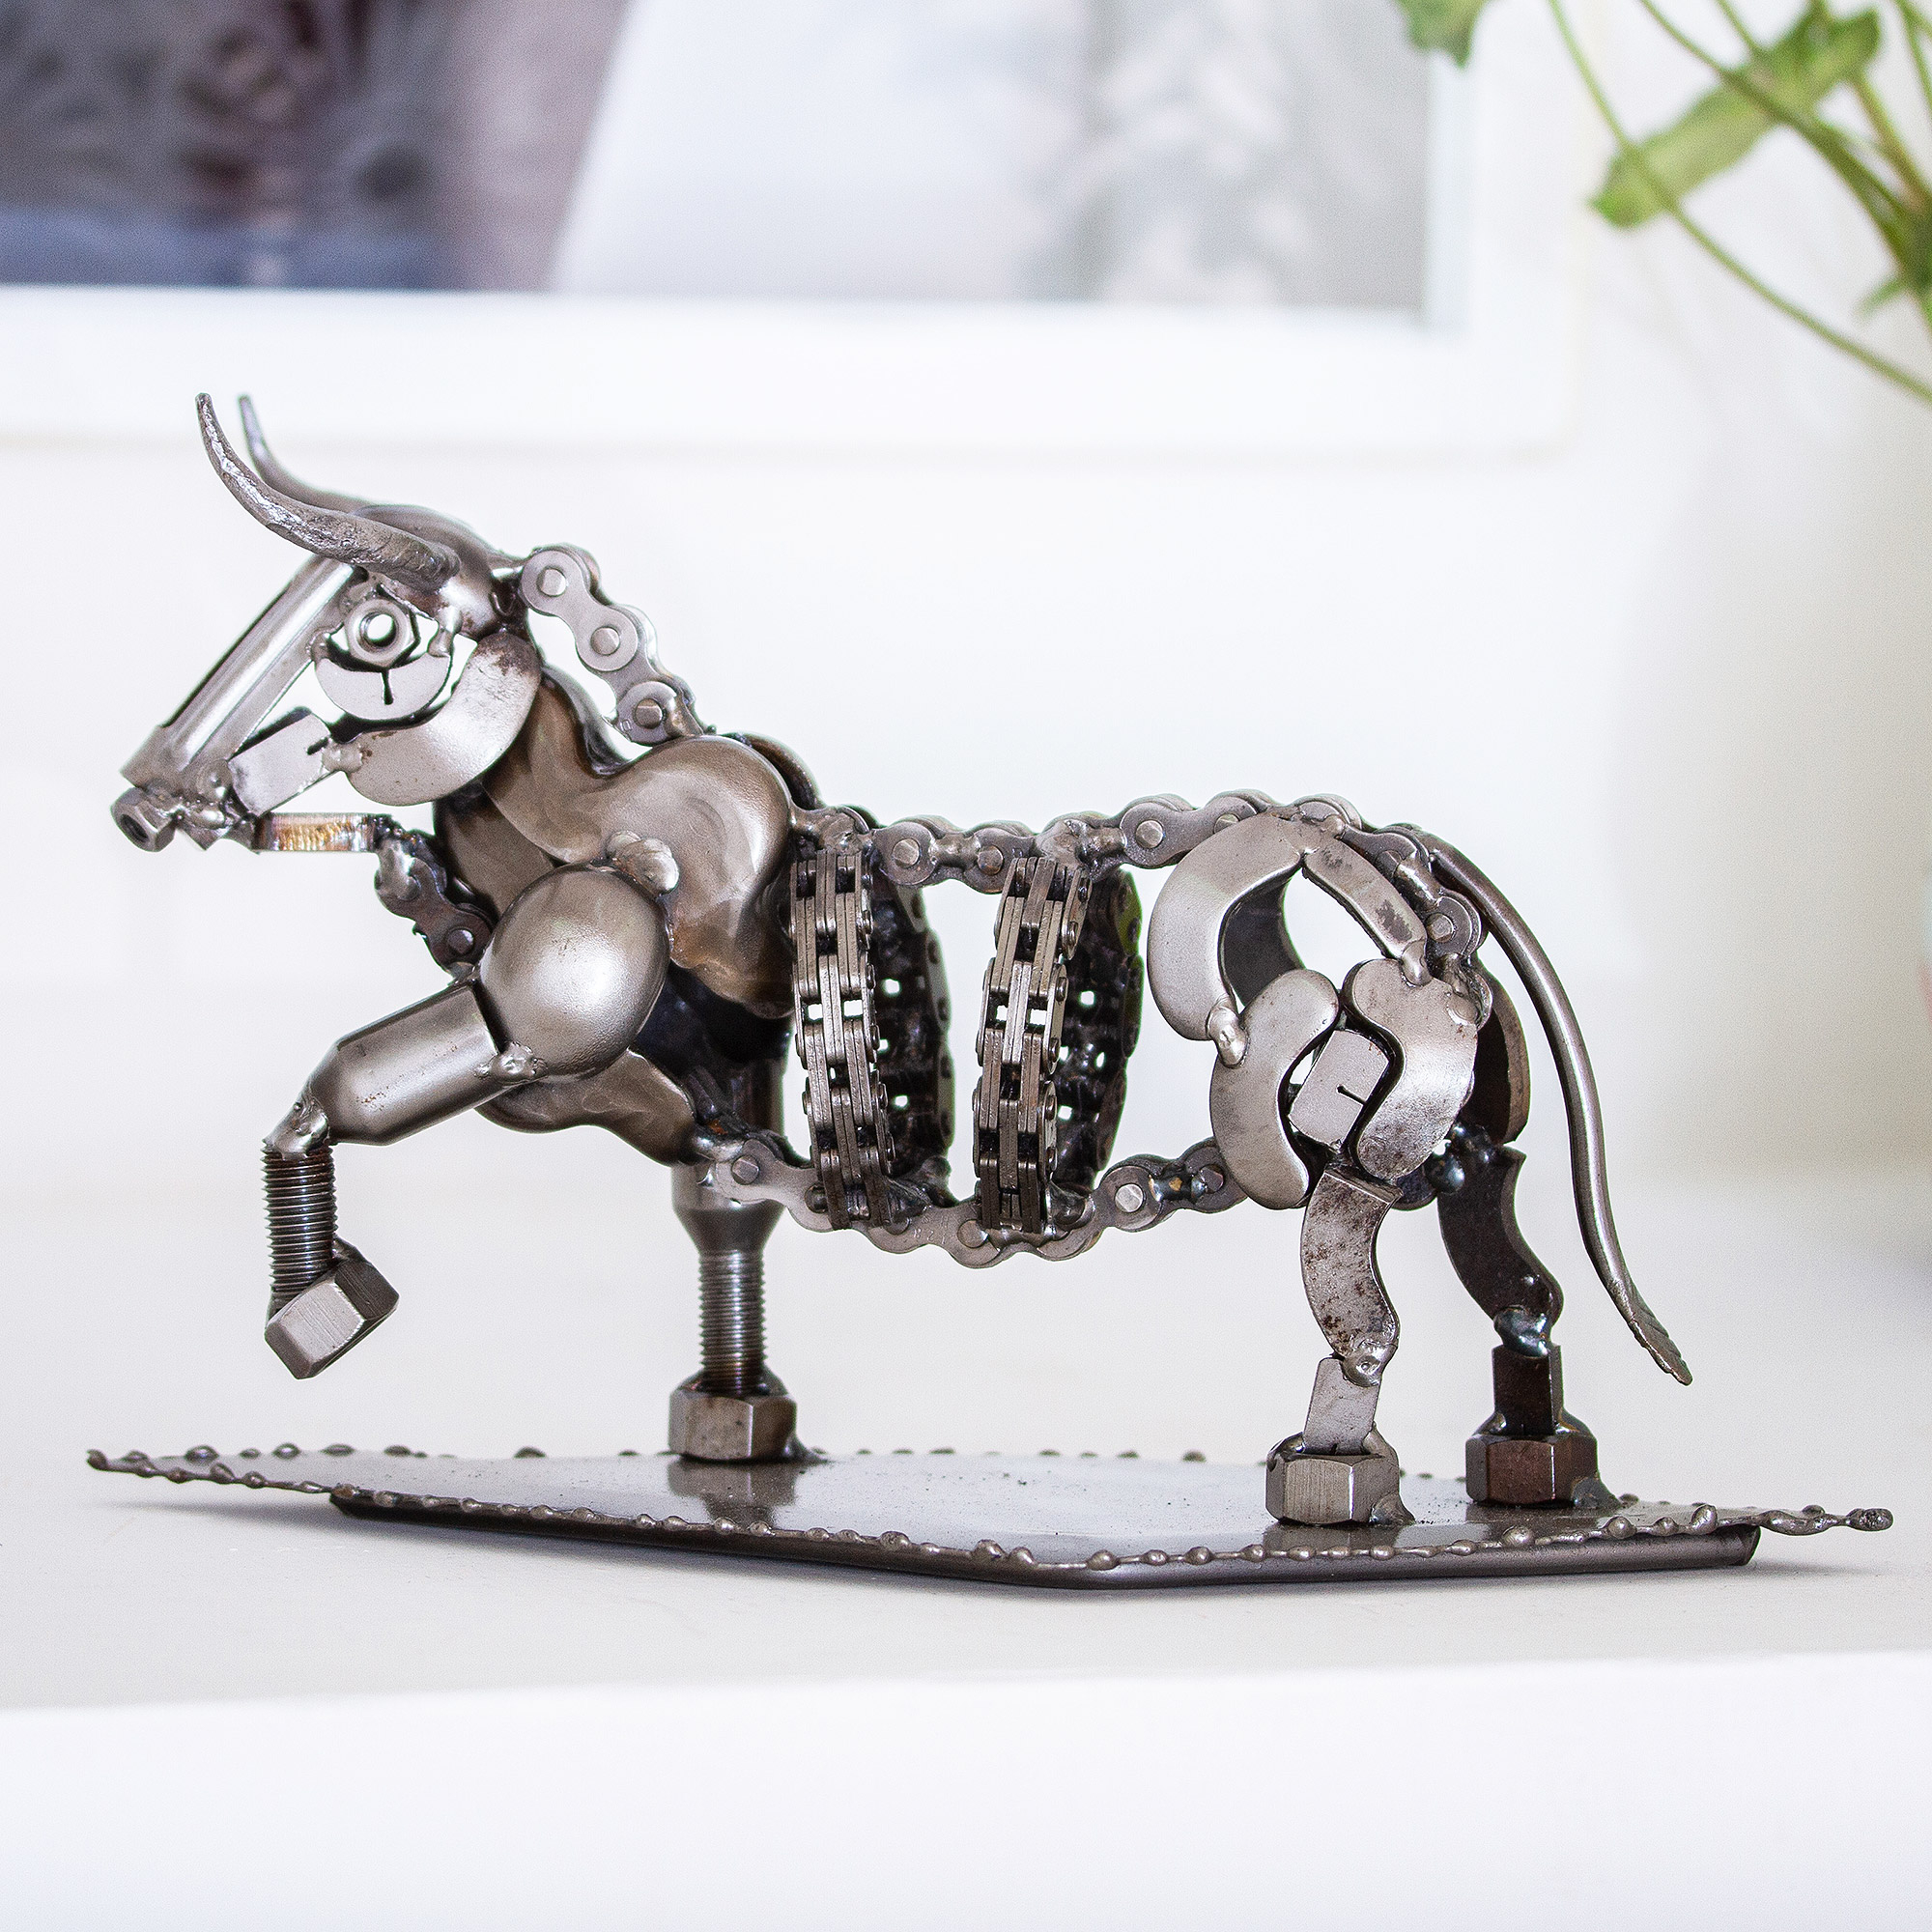 Rustic Recycled Metal Bull Sculpture - Rustic Bull | NOVICA